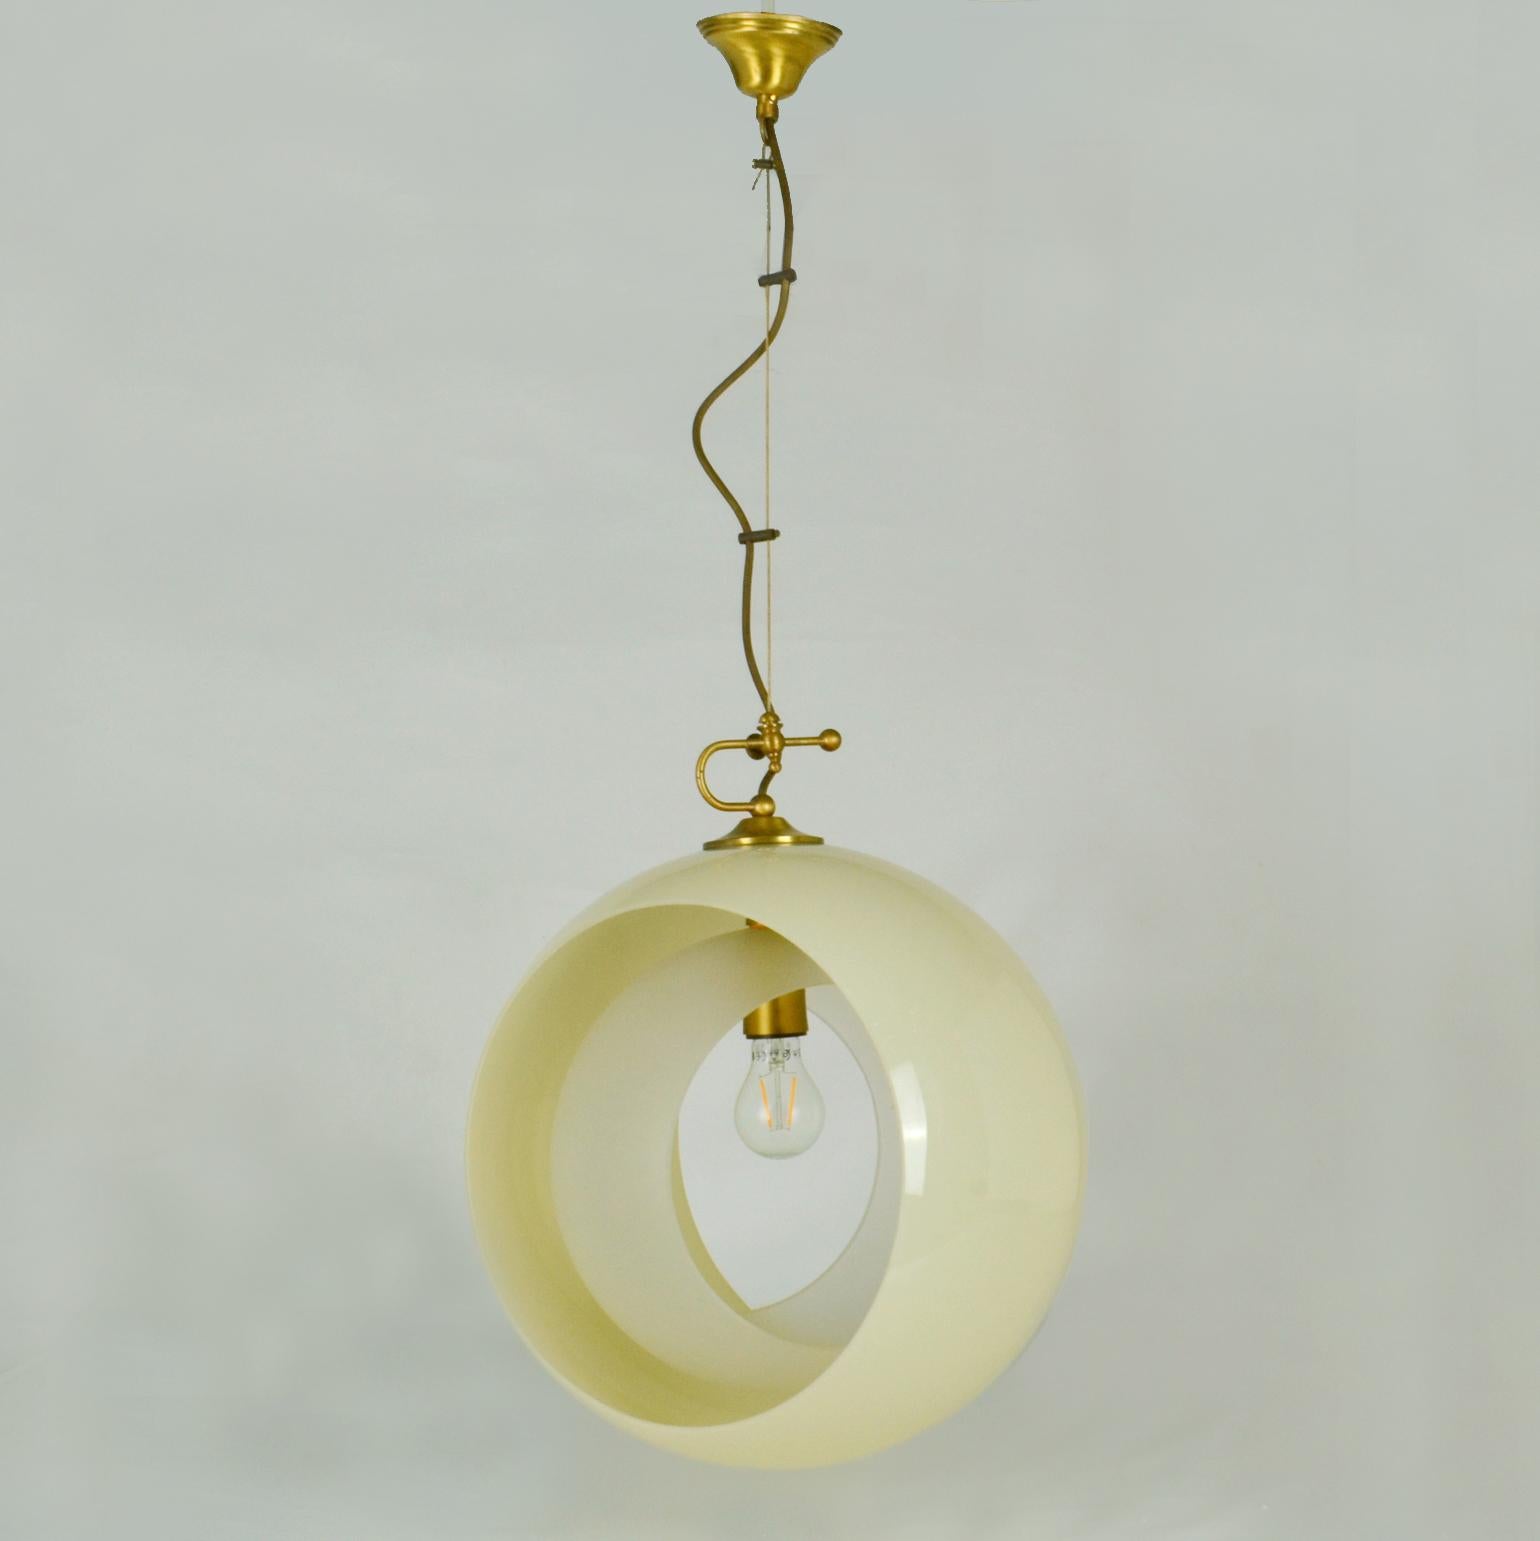 Italian Glass Pendant by Carlo Nason Mazzega, Eclipse, Venice 1960s For Sale 1